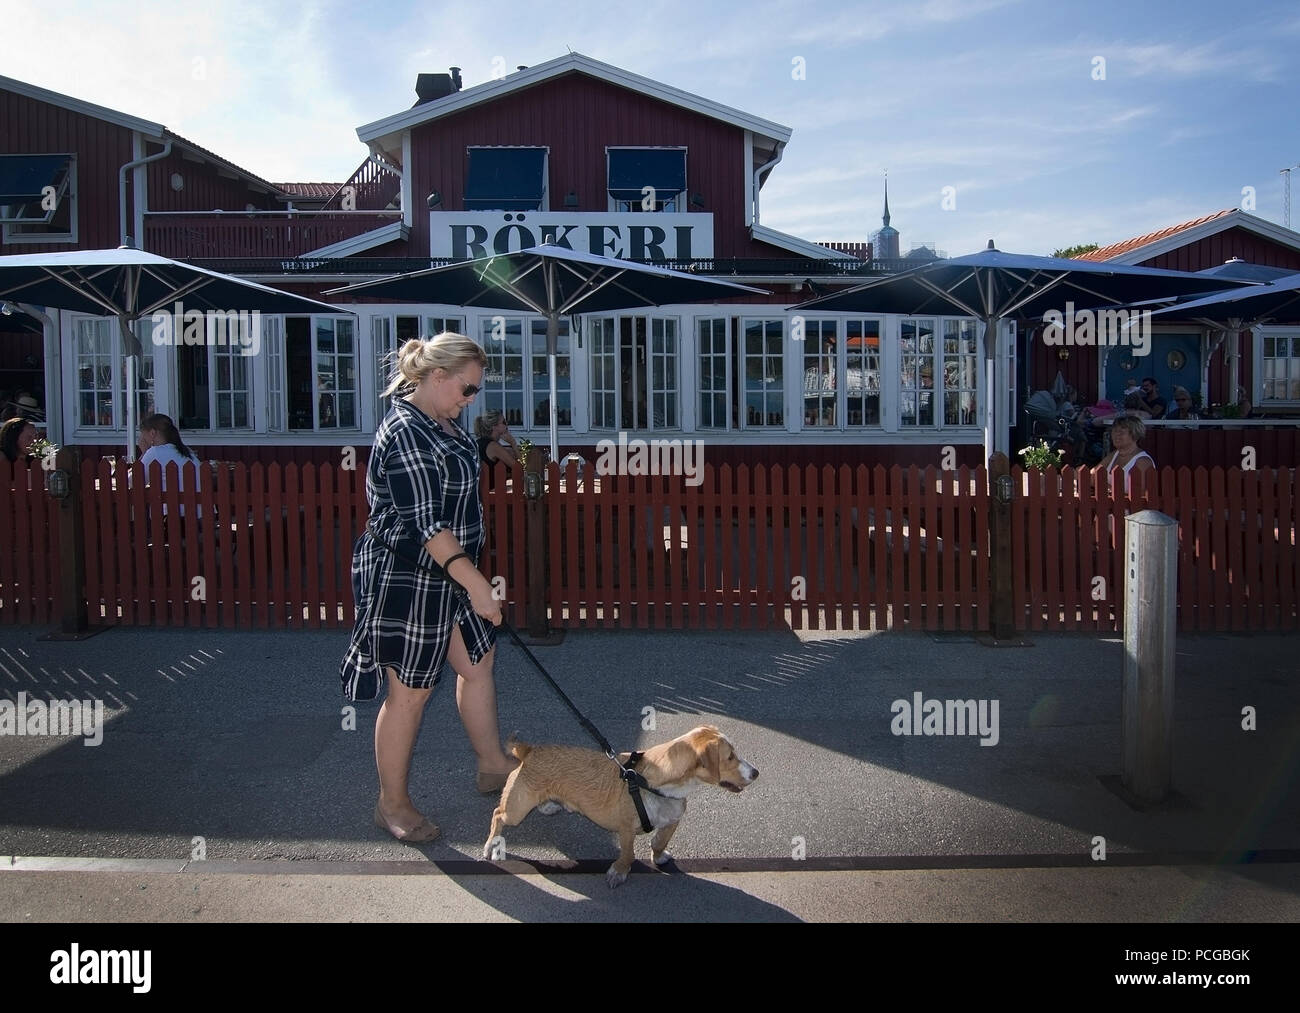 NYNASHAMN, Schweden - 18. JULI 2018: Frau geht Hund draußen Nynas rokeri Meeresfrüchte Geschäfte und Läden außen am 18. Juli 2018 in Nynashamn, Schweden. Stockfoto